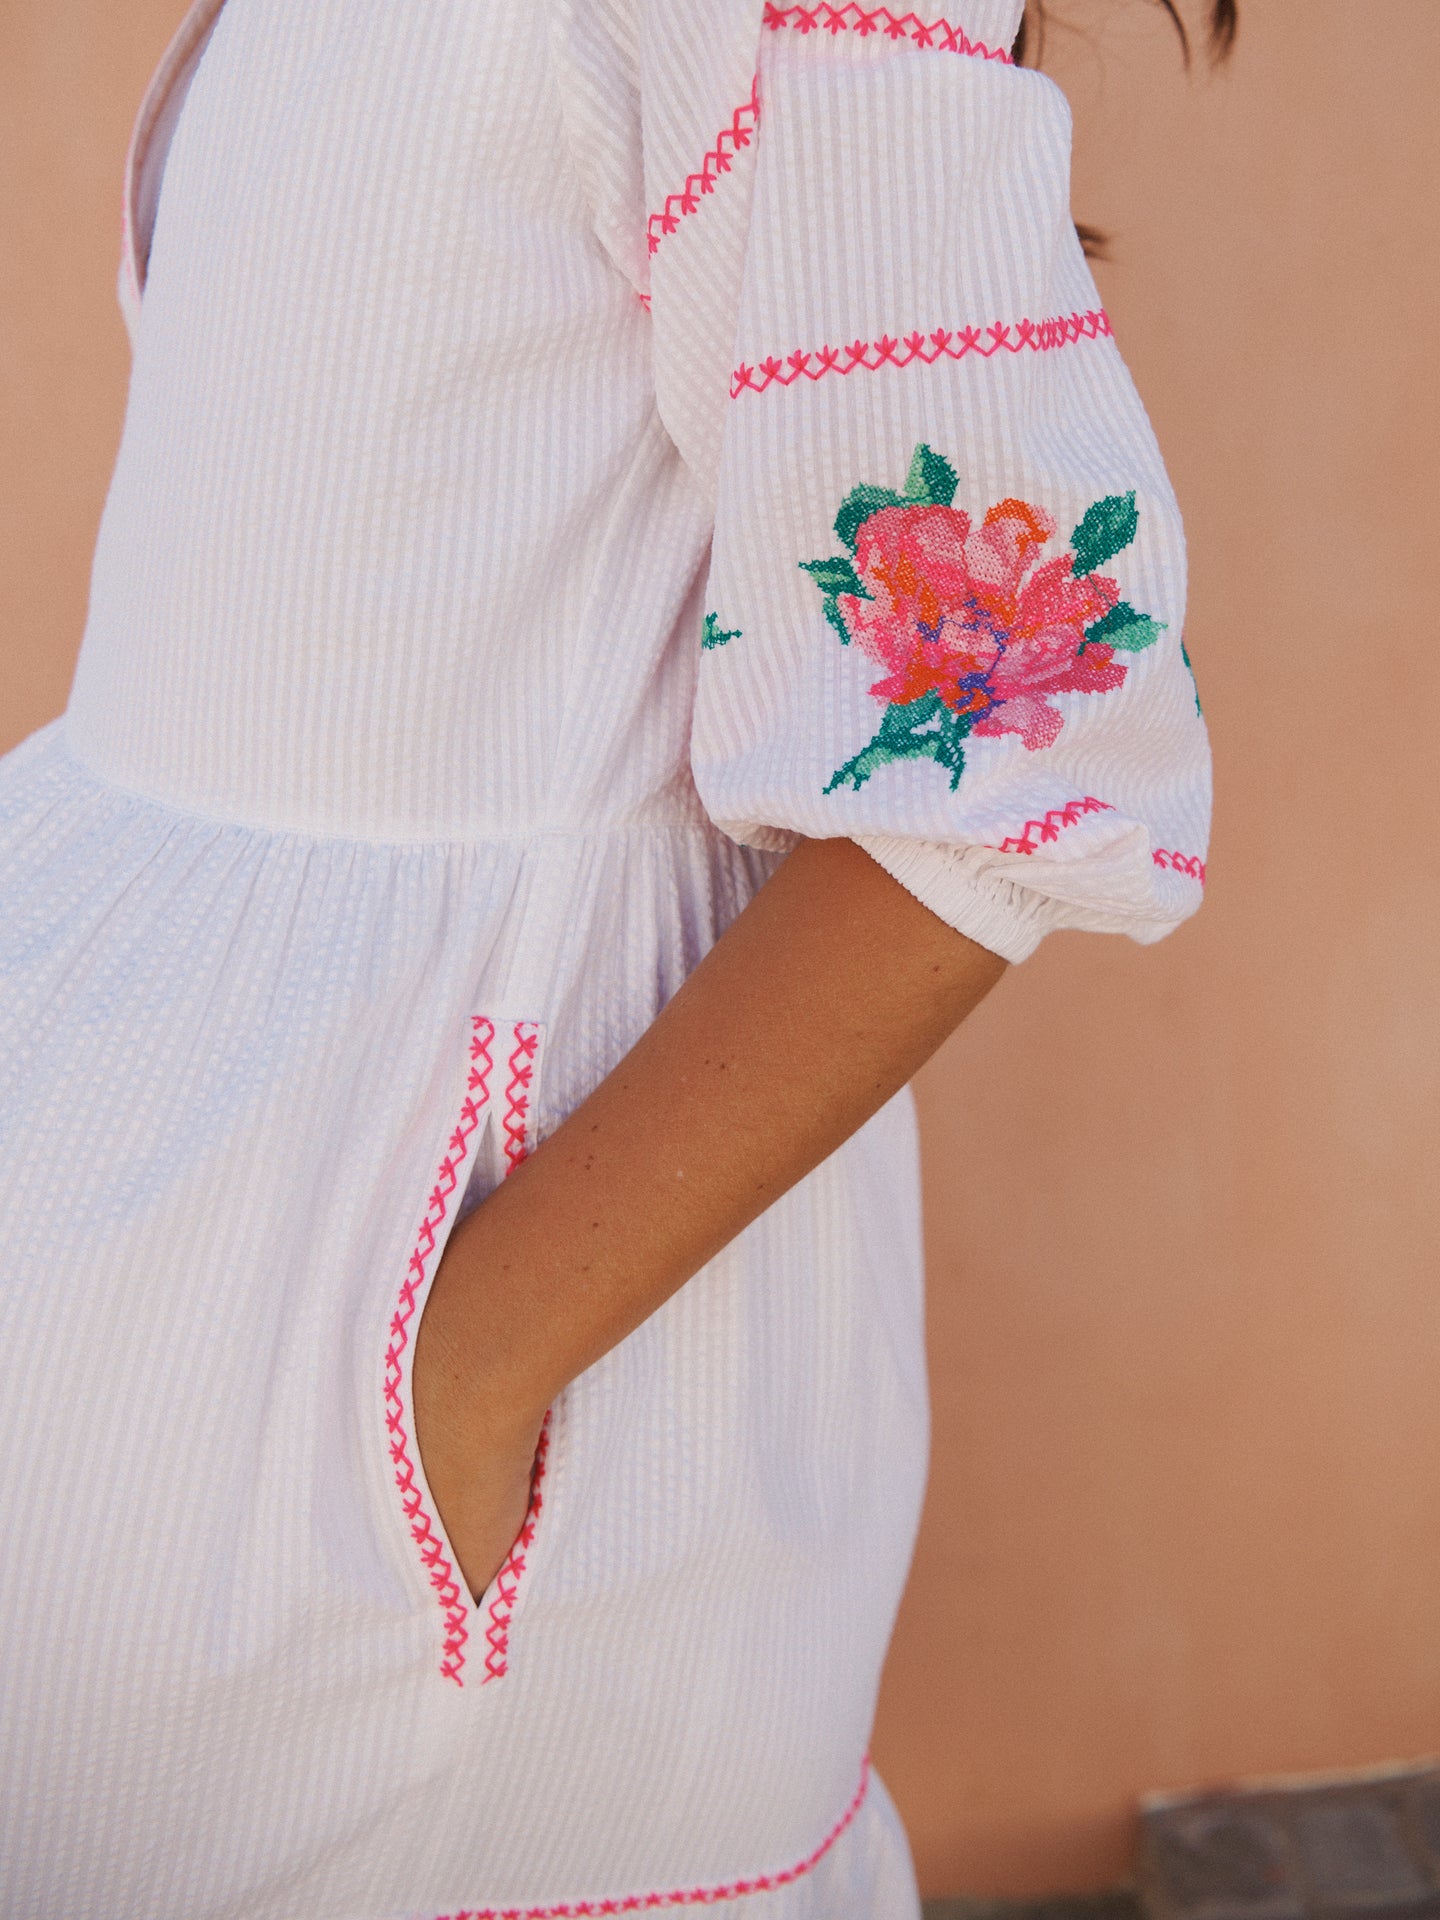 Leonie cotton seersucker embroidered dress - White